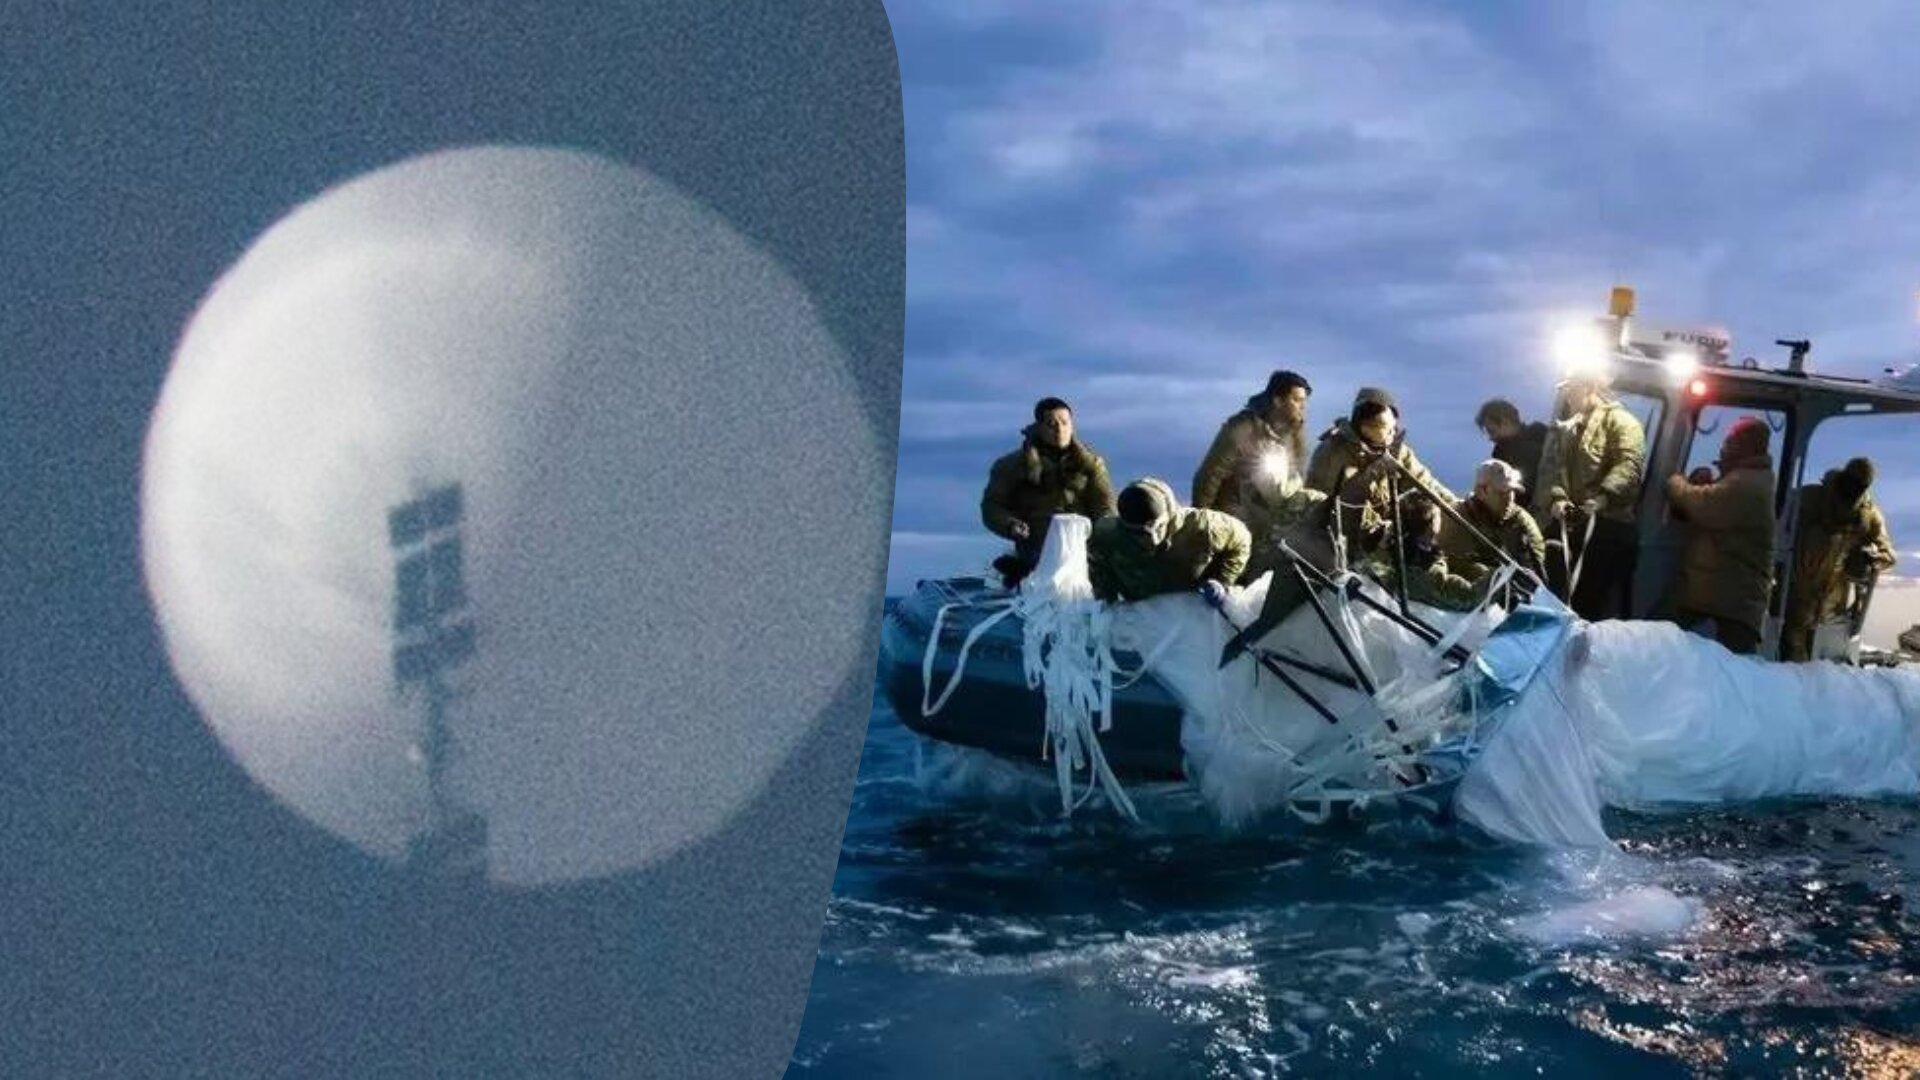 Китайську кулю, яка імовірно шпигувала за США, збили в небі над океаном. Військові показали фотографії того, що вціліло після знищення літального об'єкта.

